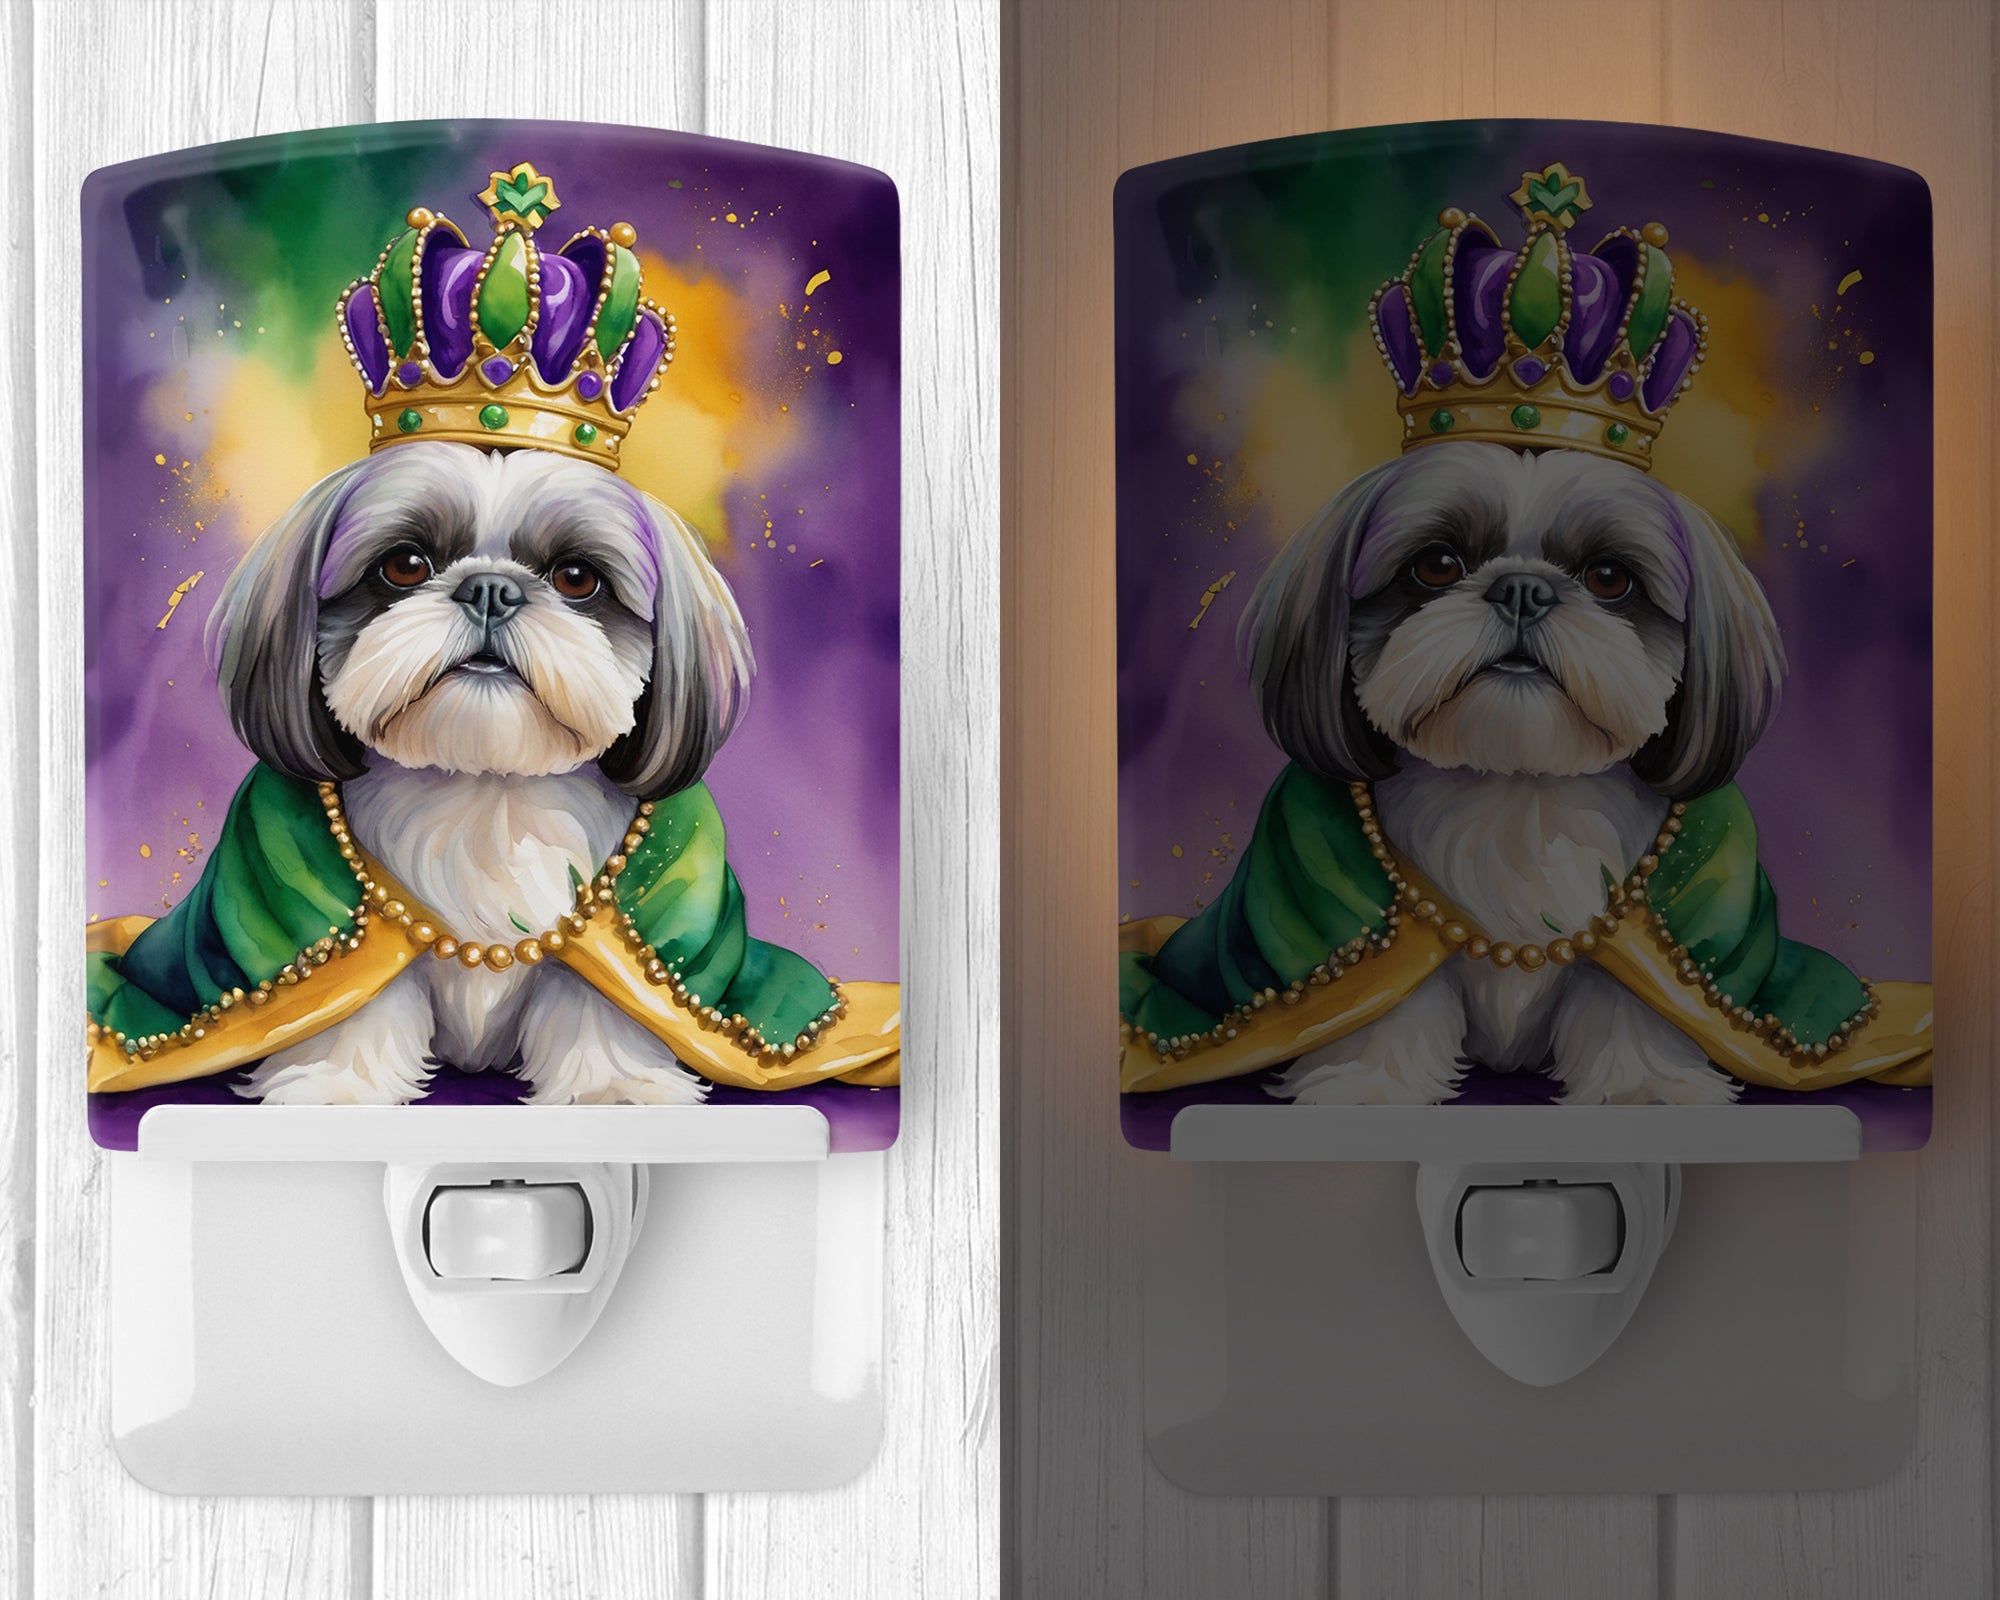 Buy this Shih Tzu King of Mardi Gras Ceramic Night Light